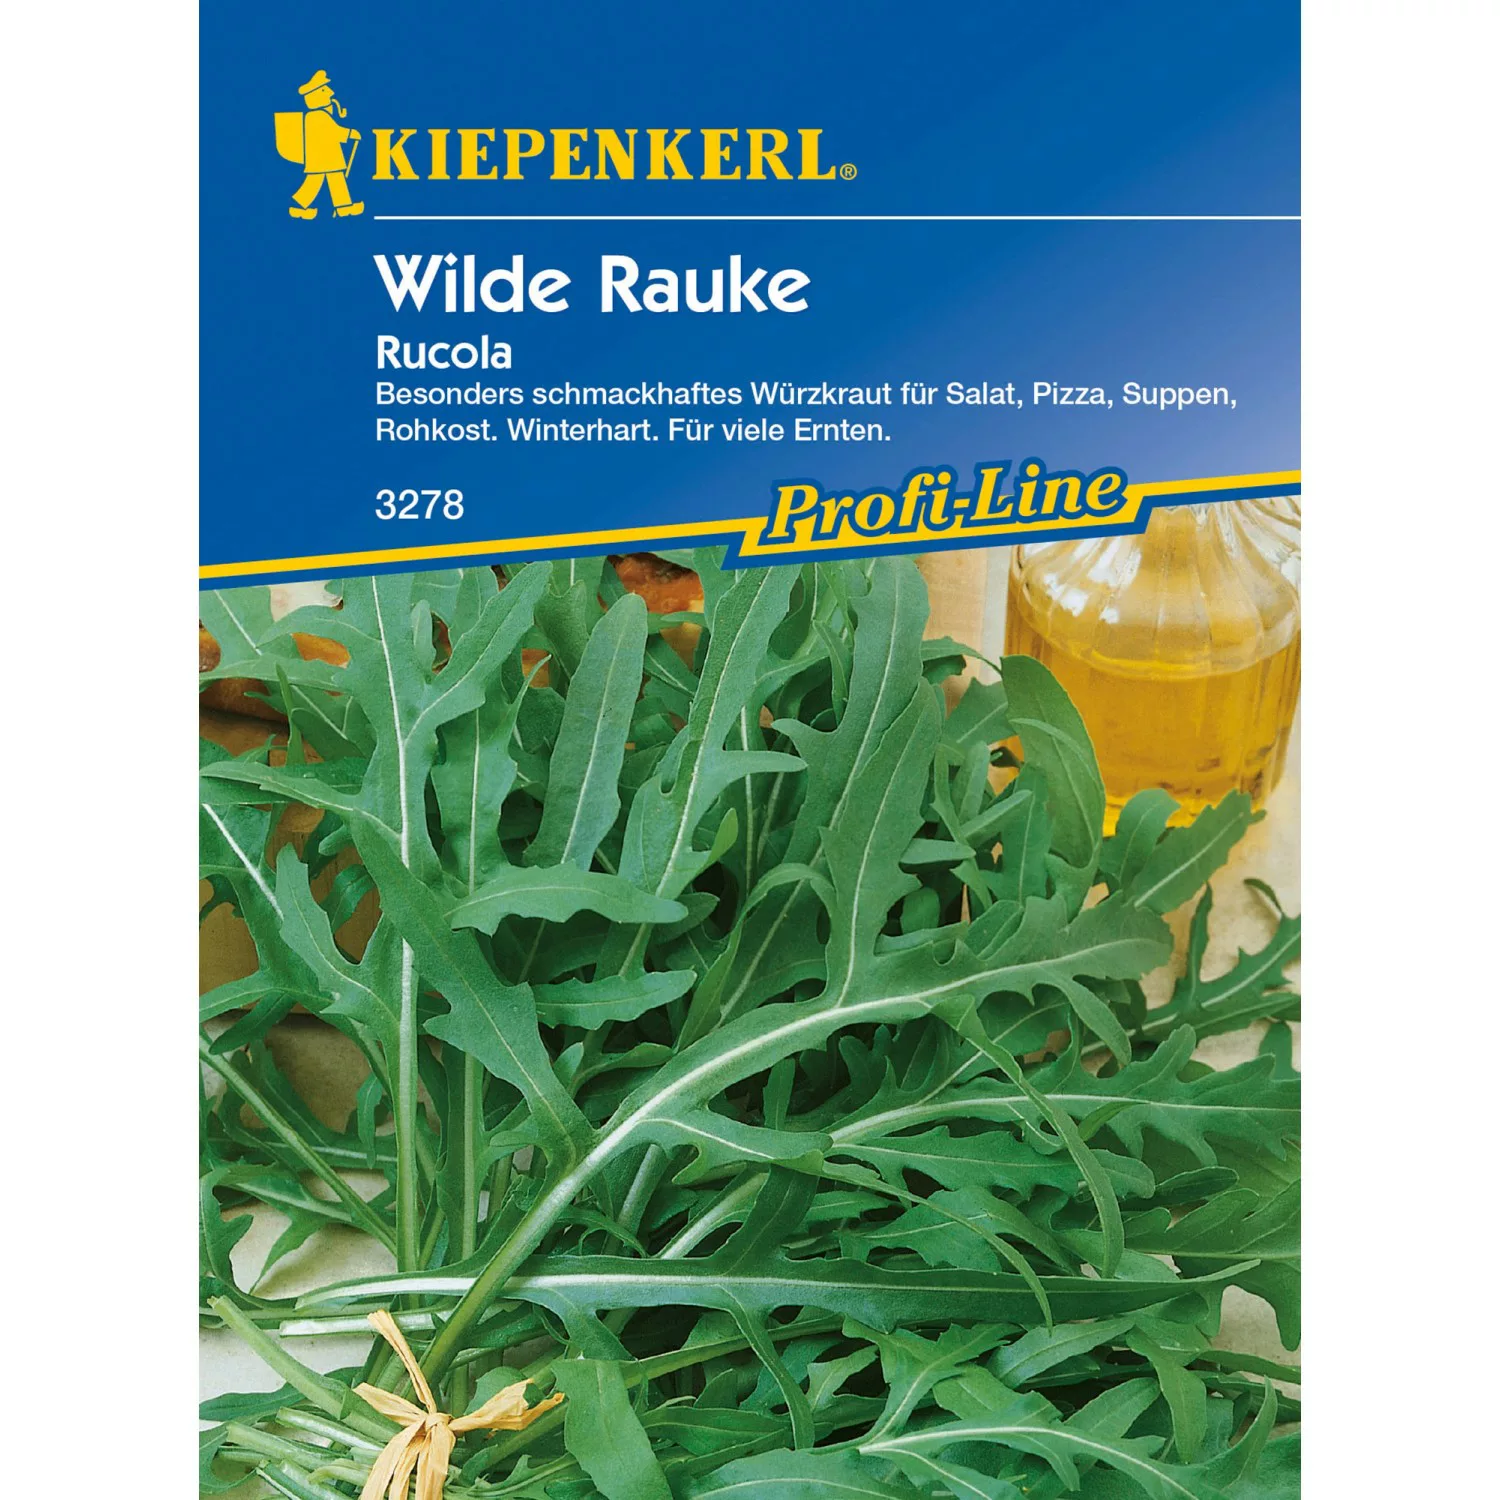 Kiepenkerl Wilde Rauke Rucola günstig online kaufen